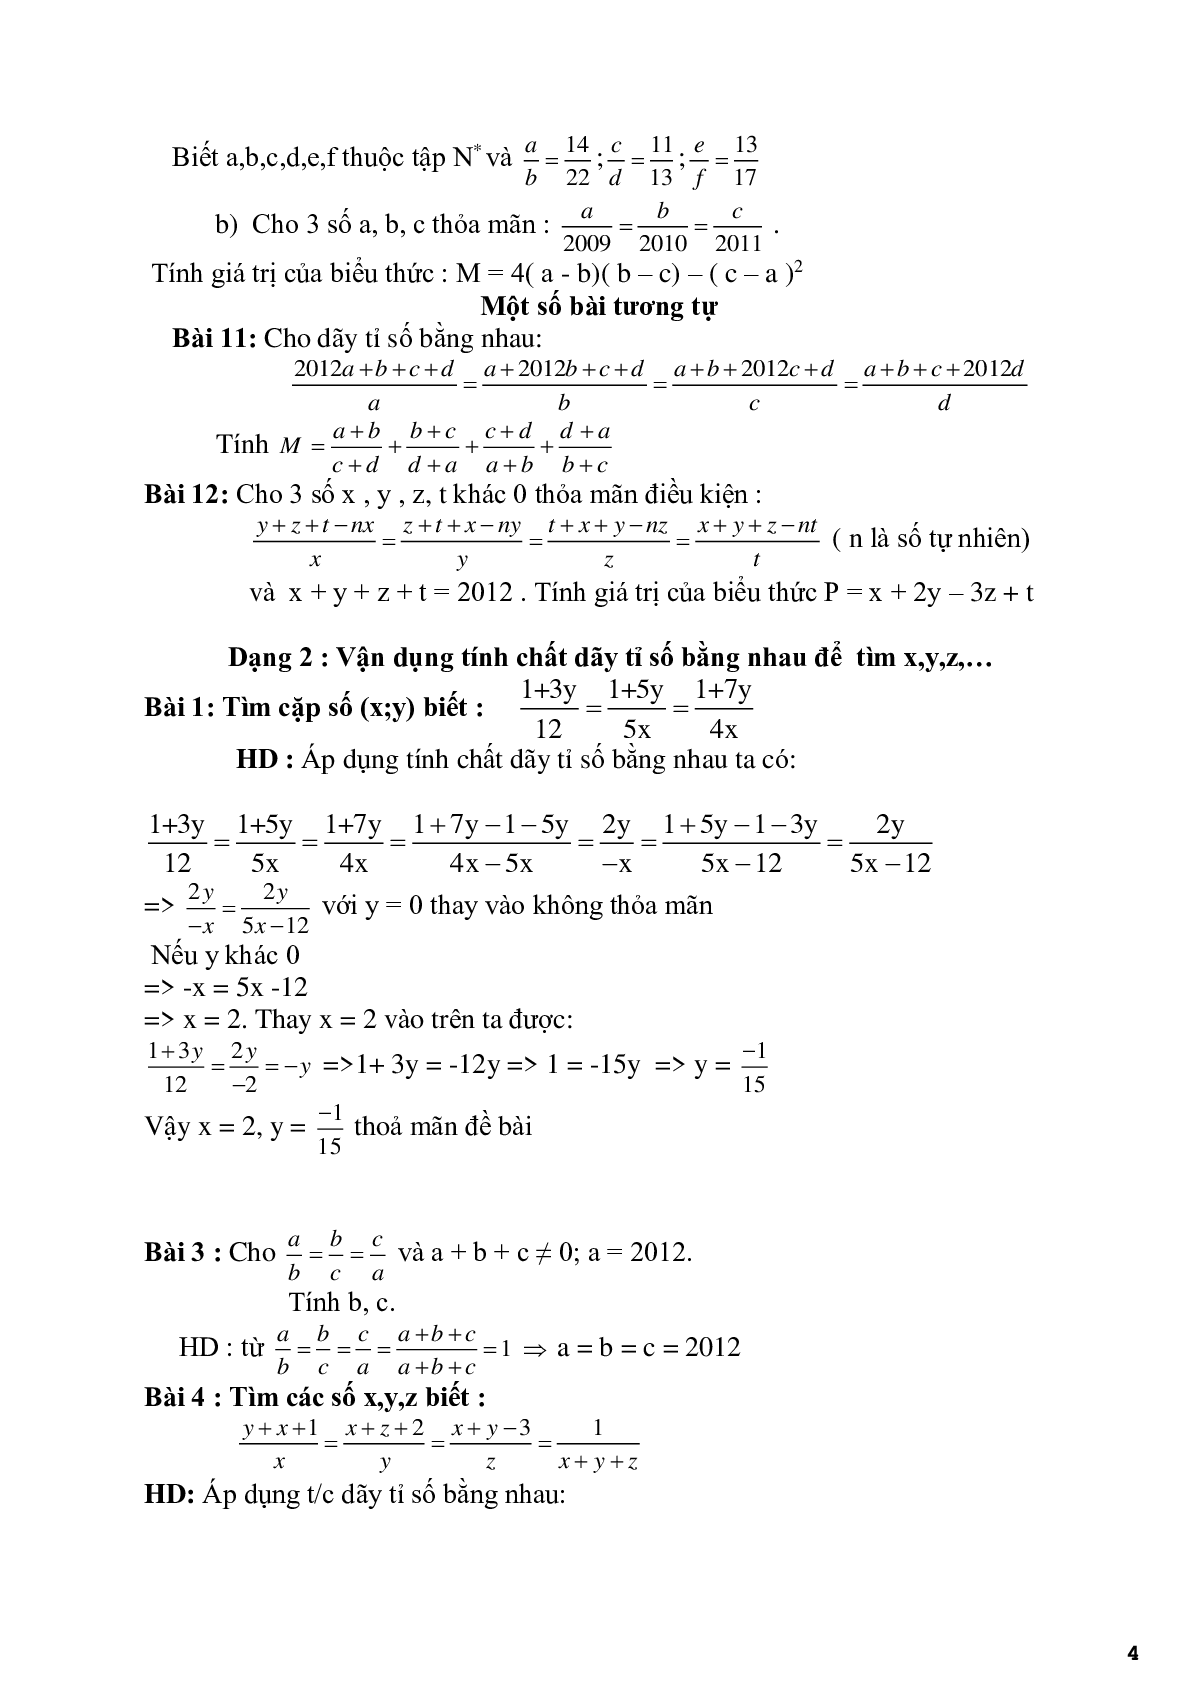 Chuyên đề 2 - Bài toán về tính chất của dãy tỉ số bằng nhau - có đáp án (trang 4)